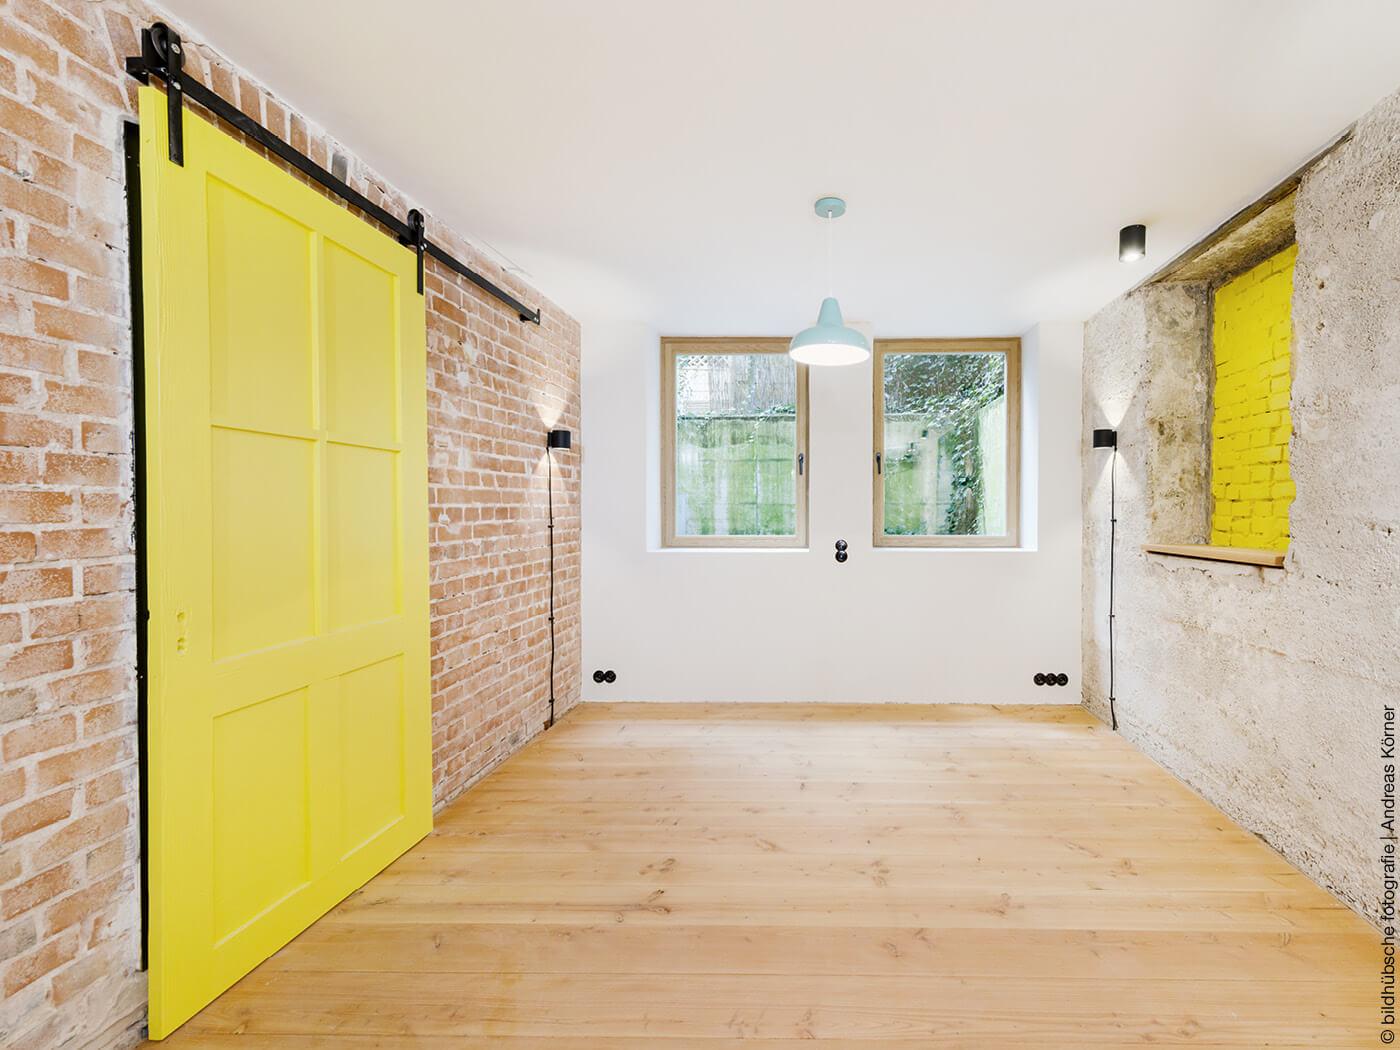 Raum mit Holzdielen, unverputzte Wänden und gelber Schiebetür